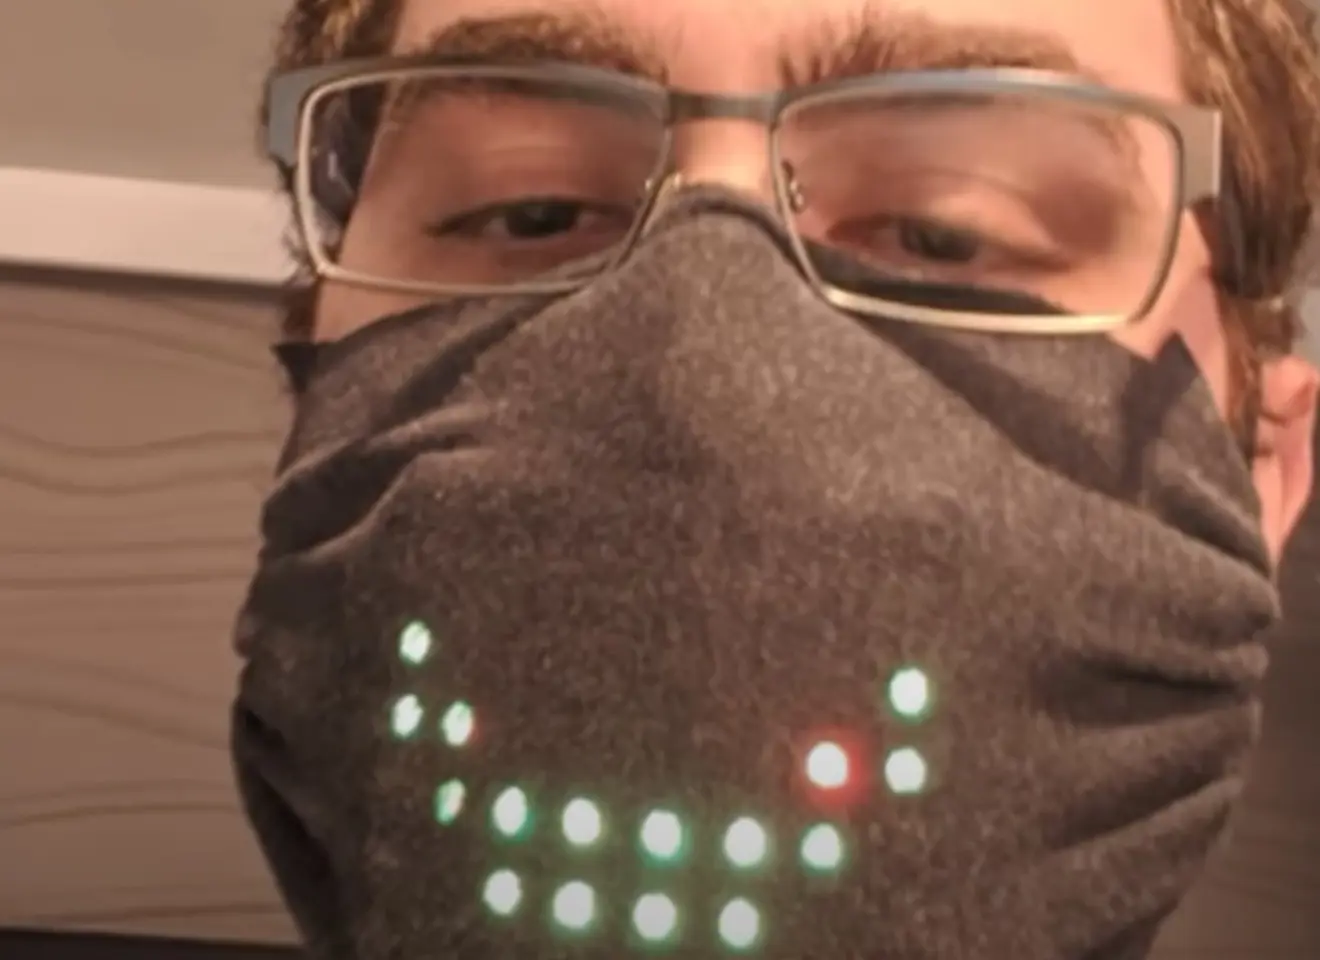 Nærbilde av en mann med briller og COVID maske som har innebygde LED lys som kan styres til å viser f.eks. smilefjes